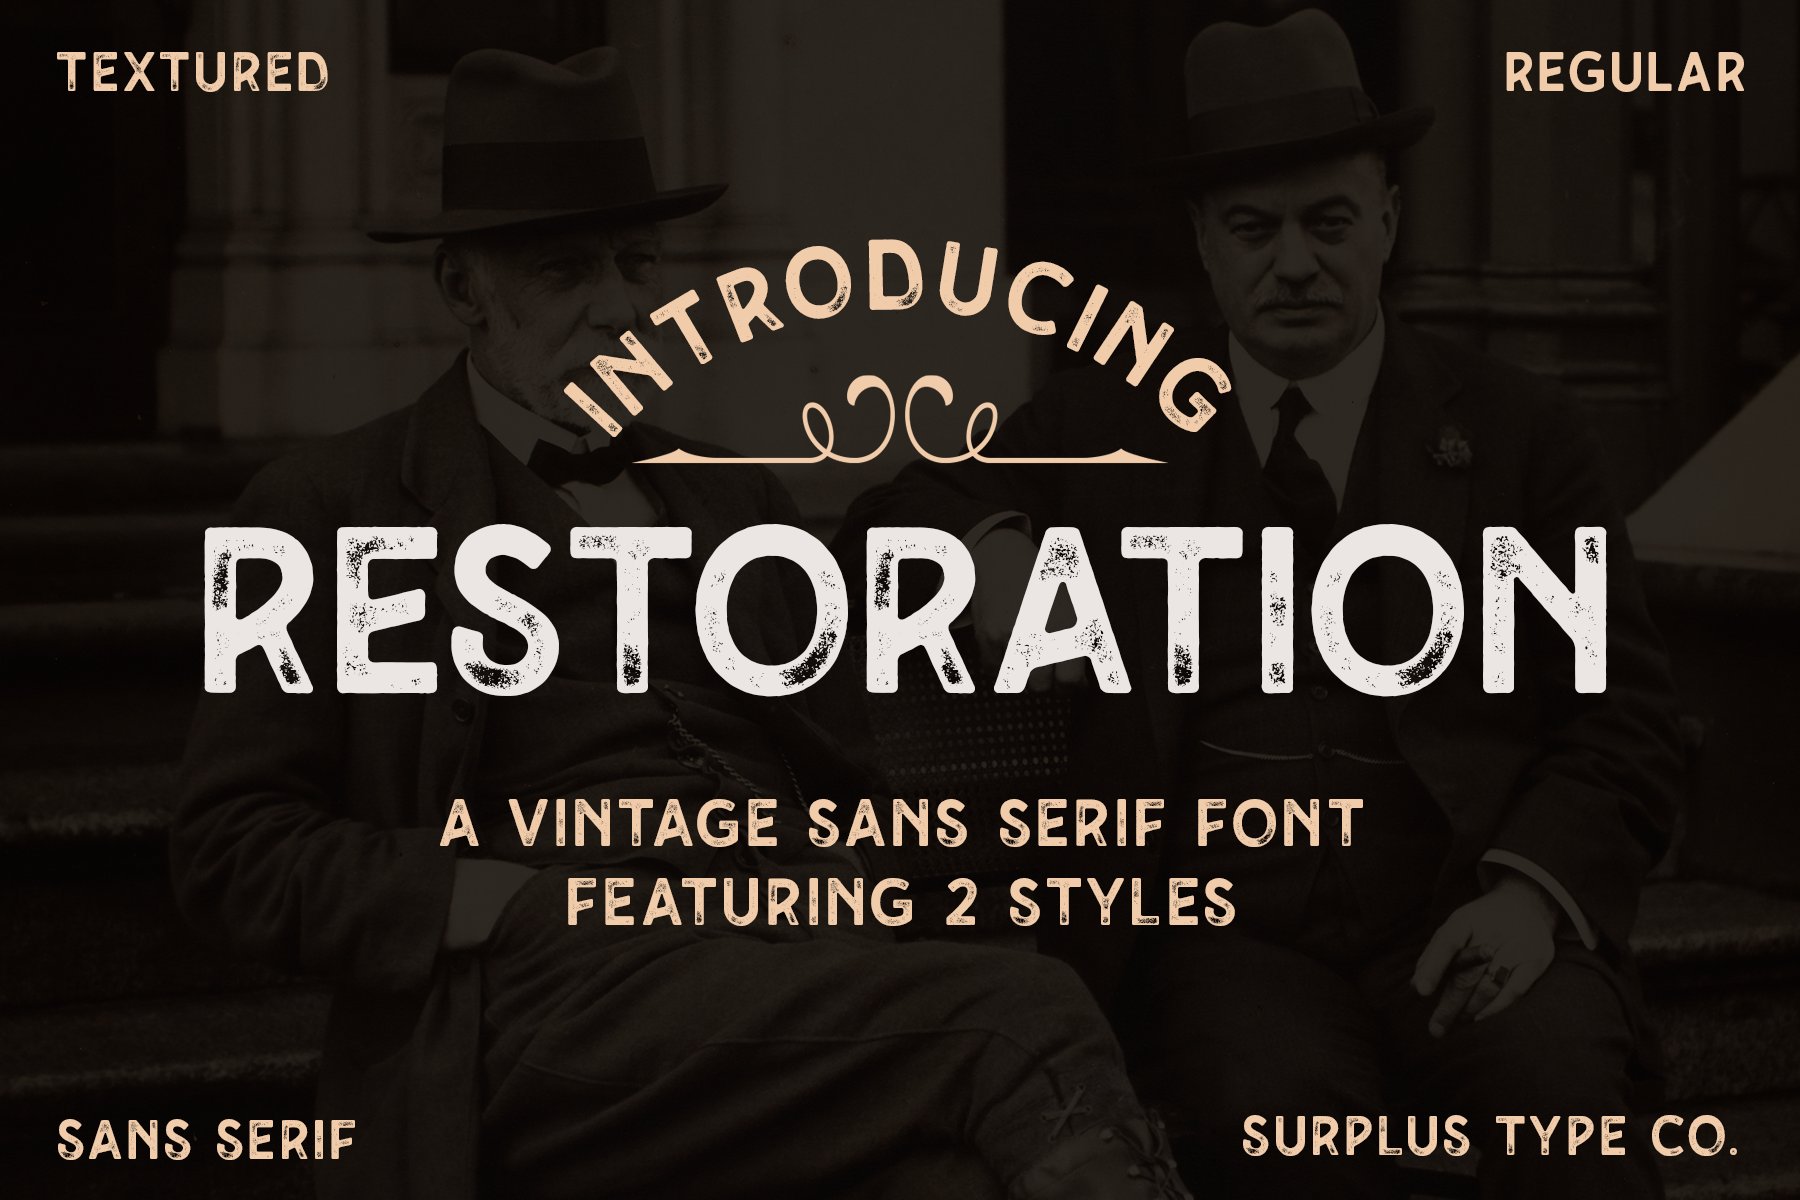 Restoration - Vintage Font cover image.